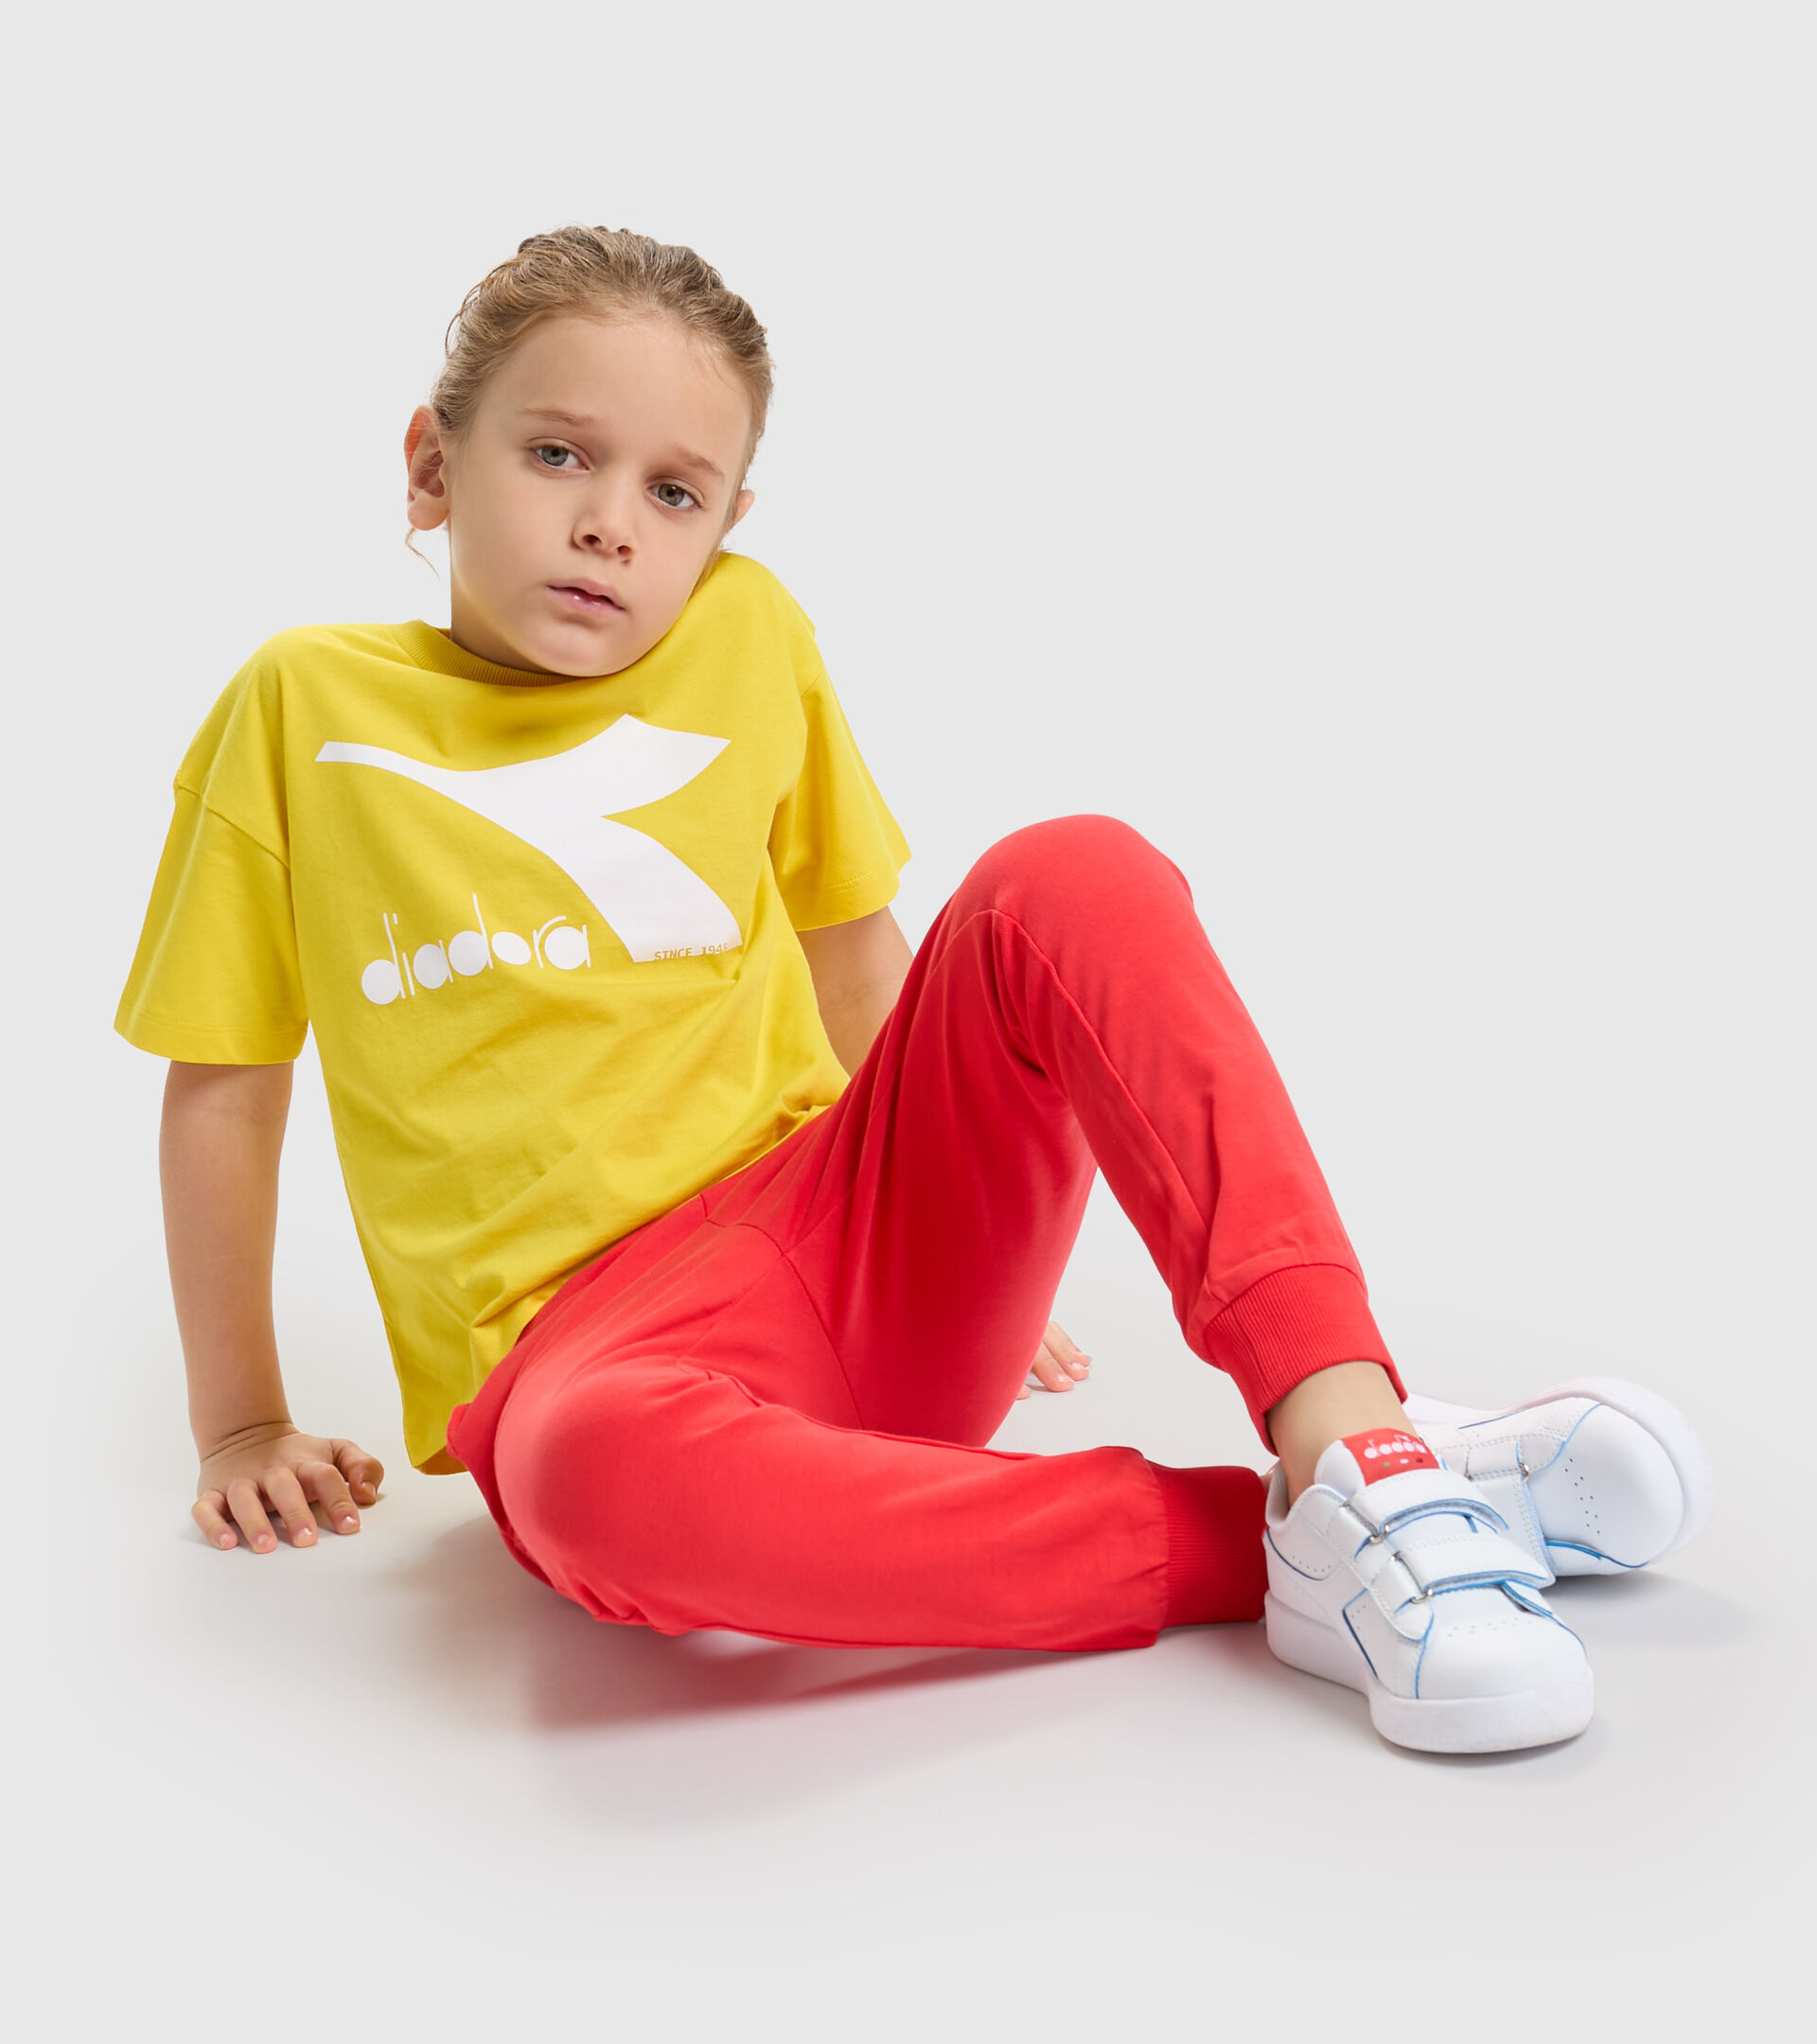 Junior cotton T-shirt - Unisex JU.T-SHIRT SS BL RAINBOW YELLOW LENS - Diadora